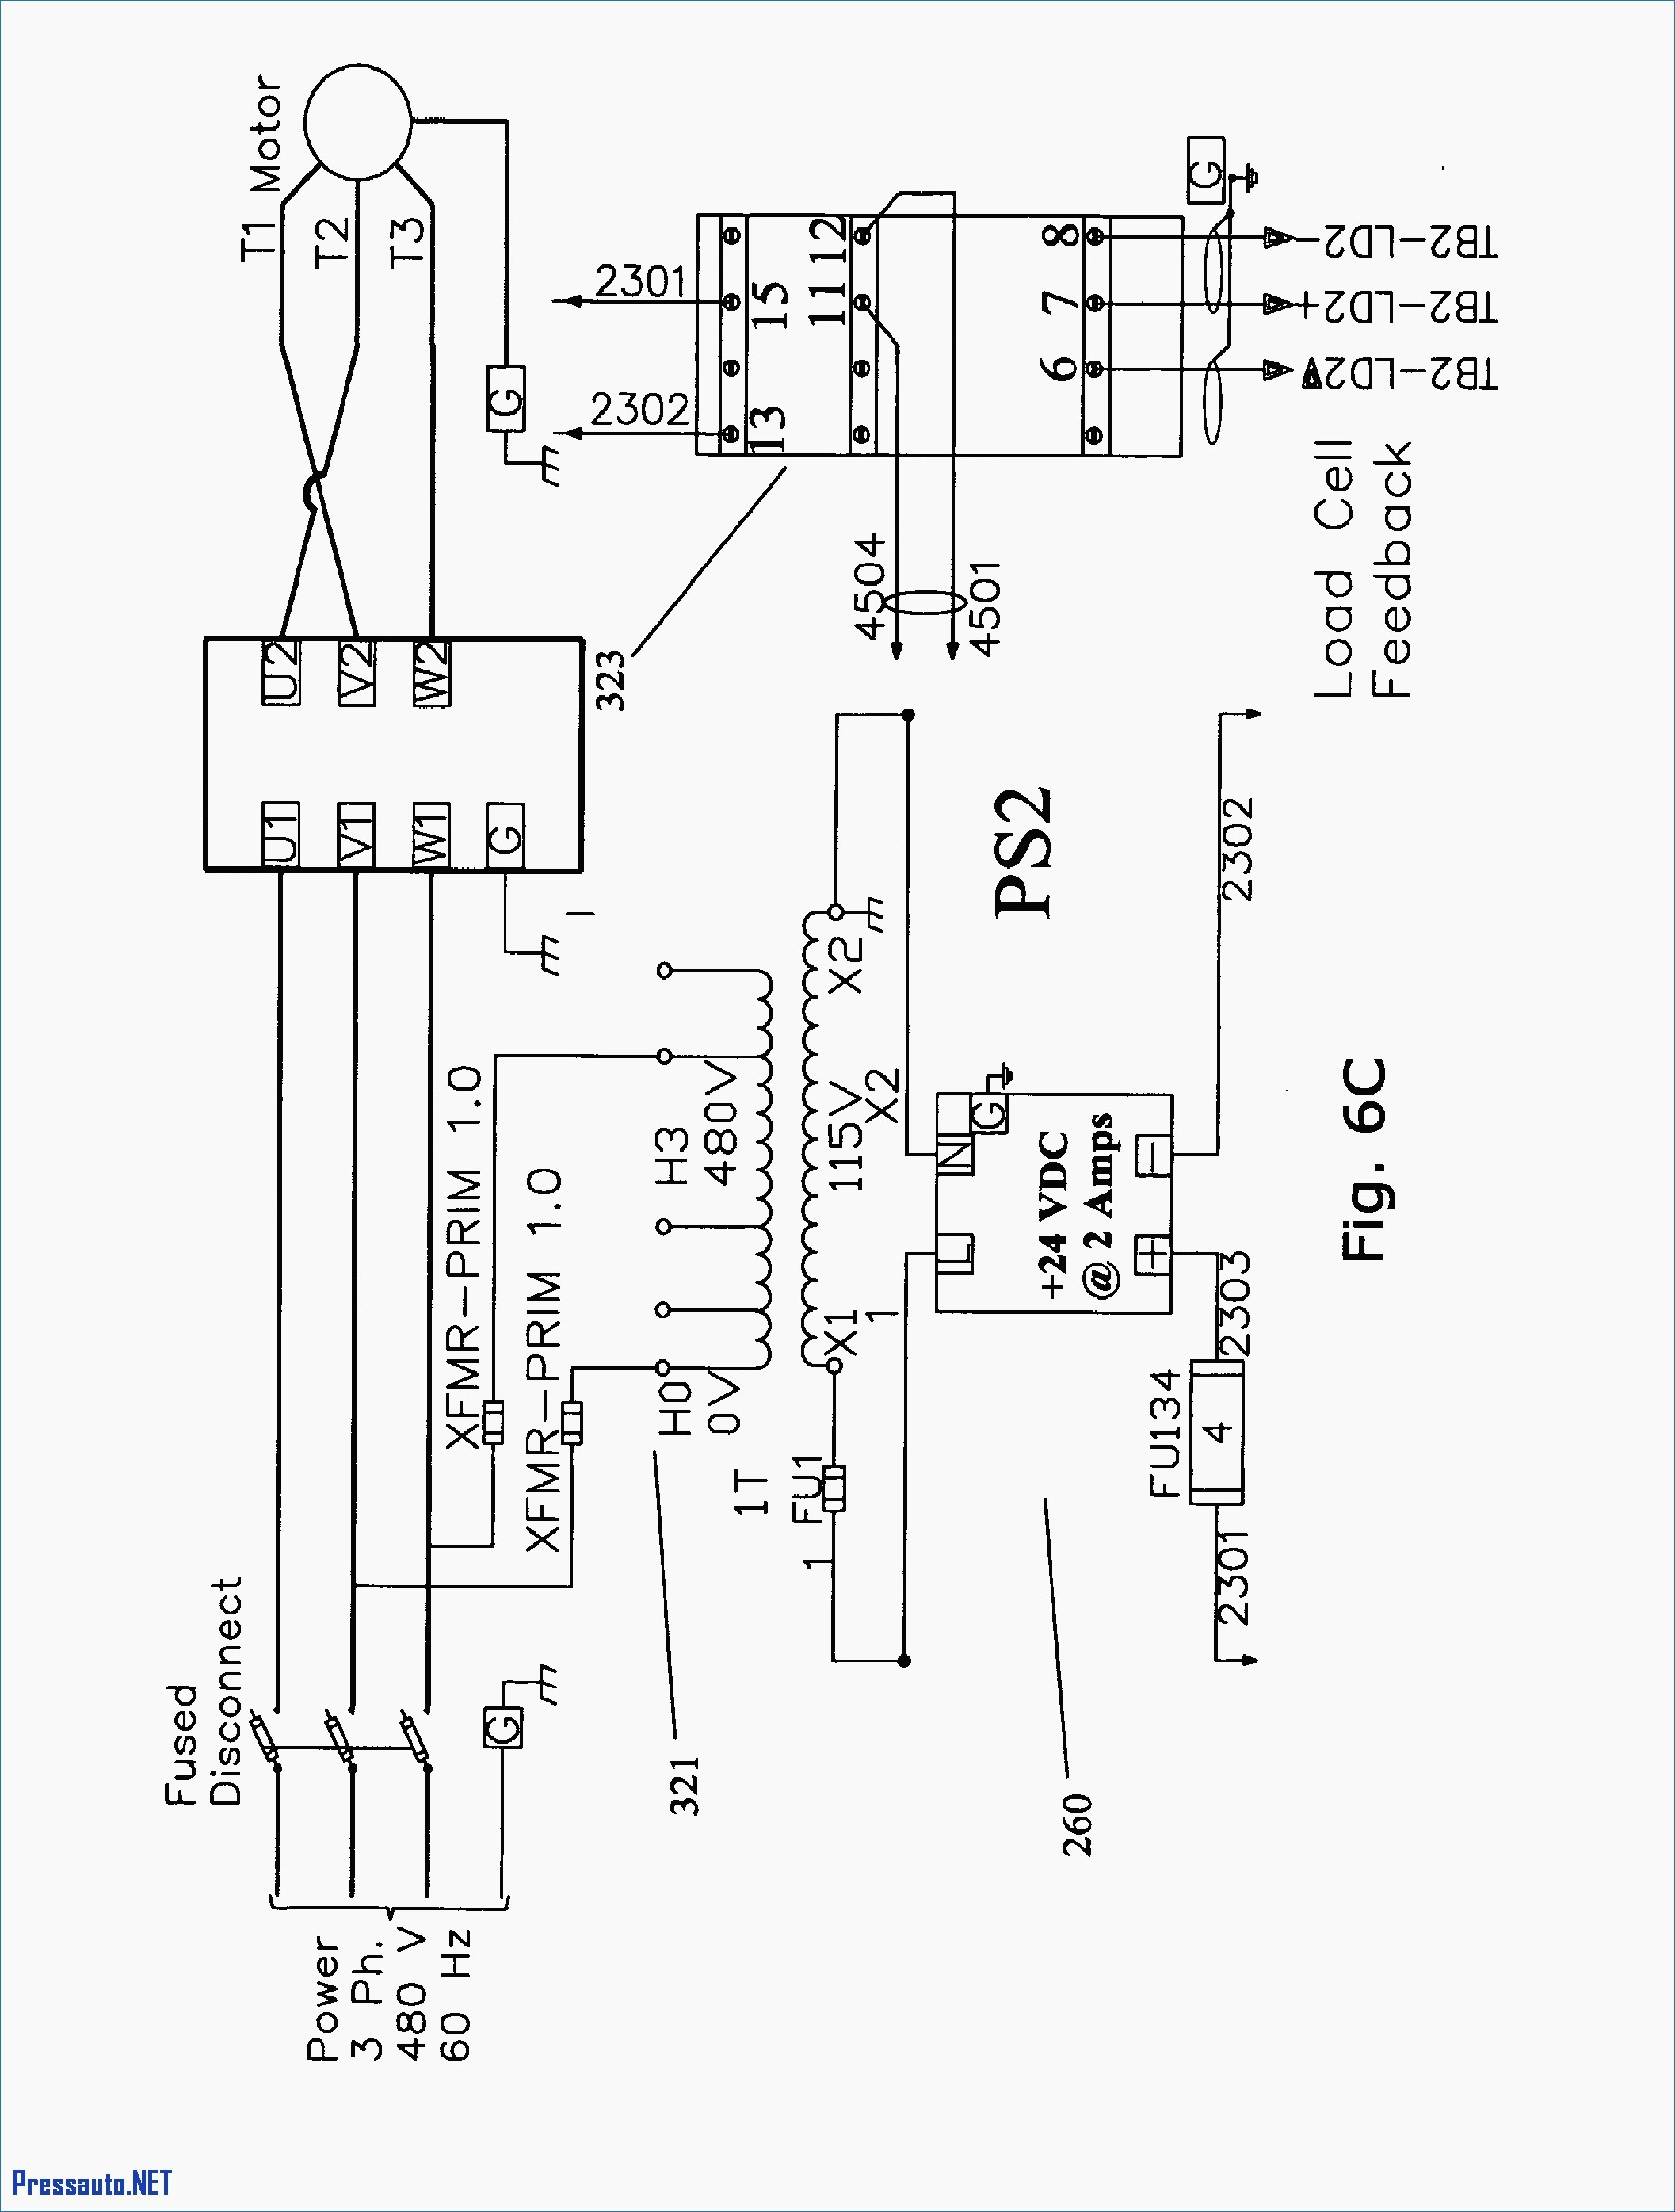 2 Sd Pump Wiring Diagram | Manual E-Books - Hayward Super Pump Wiring Diagram 115V